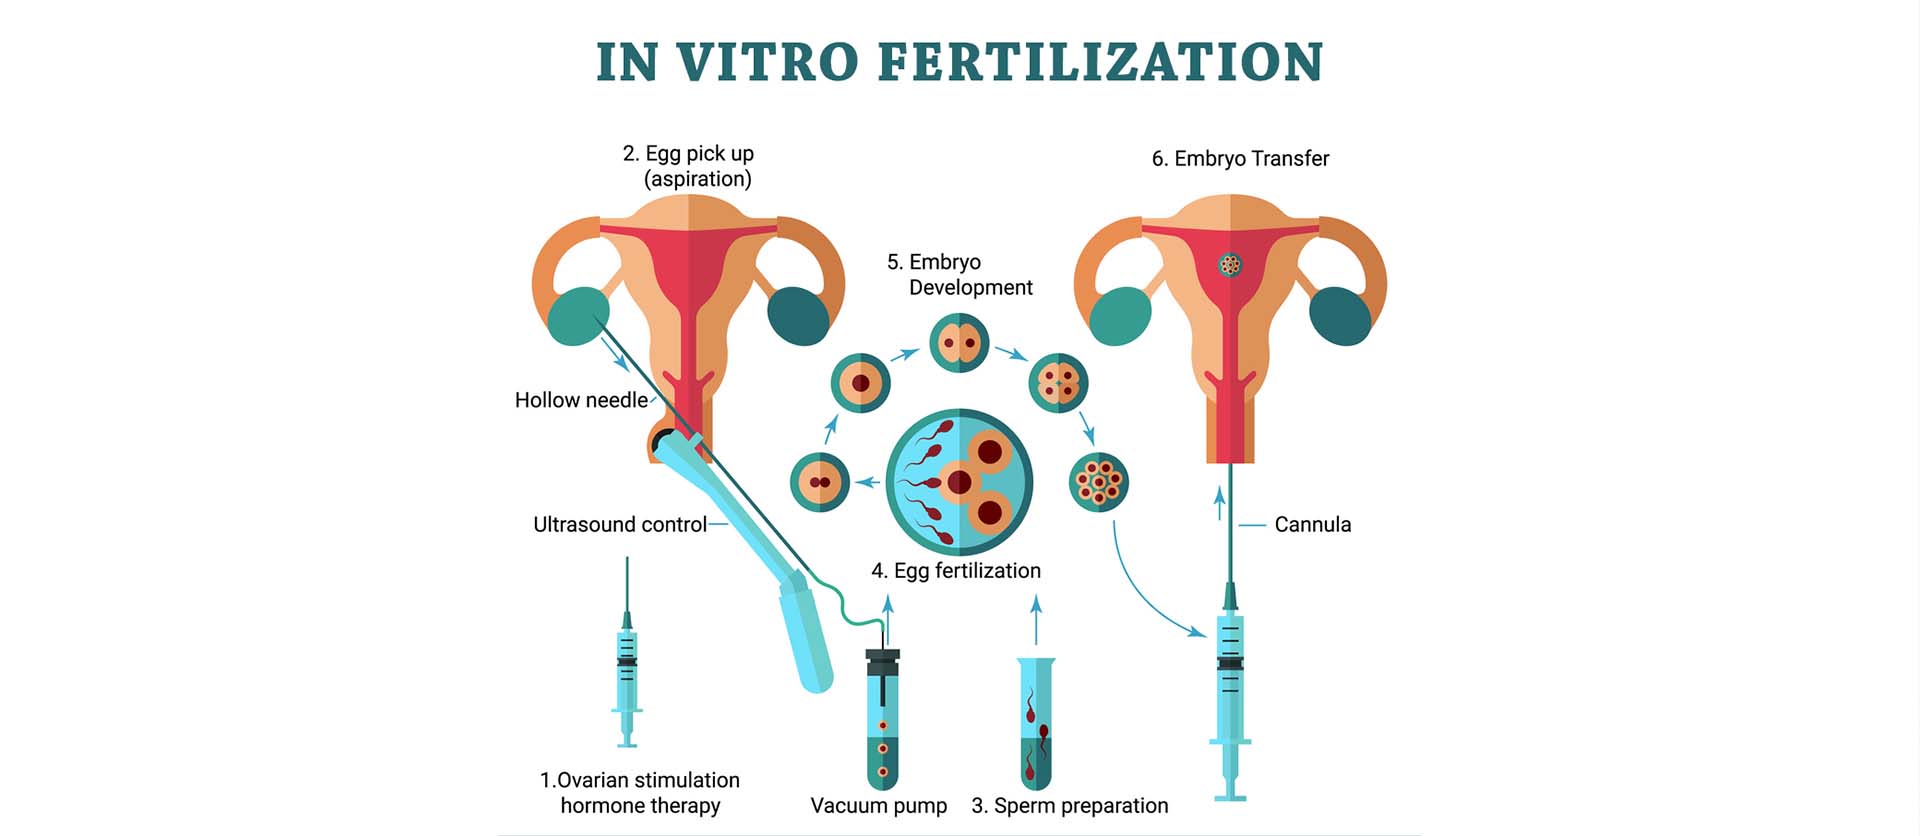 treatment process for ivf in utsav fertility center in panvel, navi mumbai